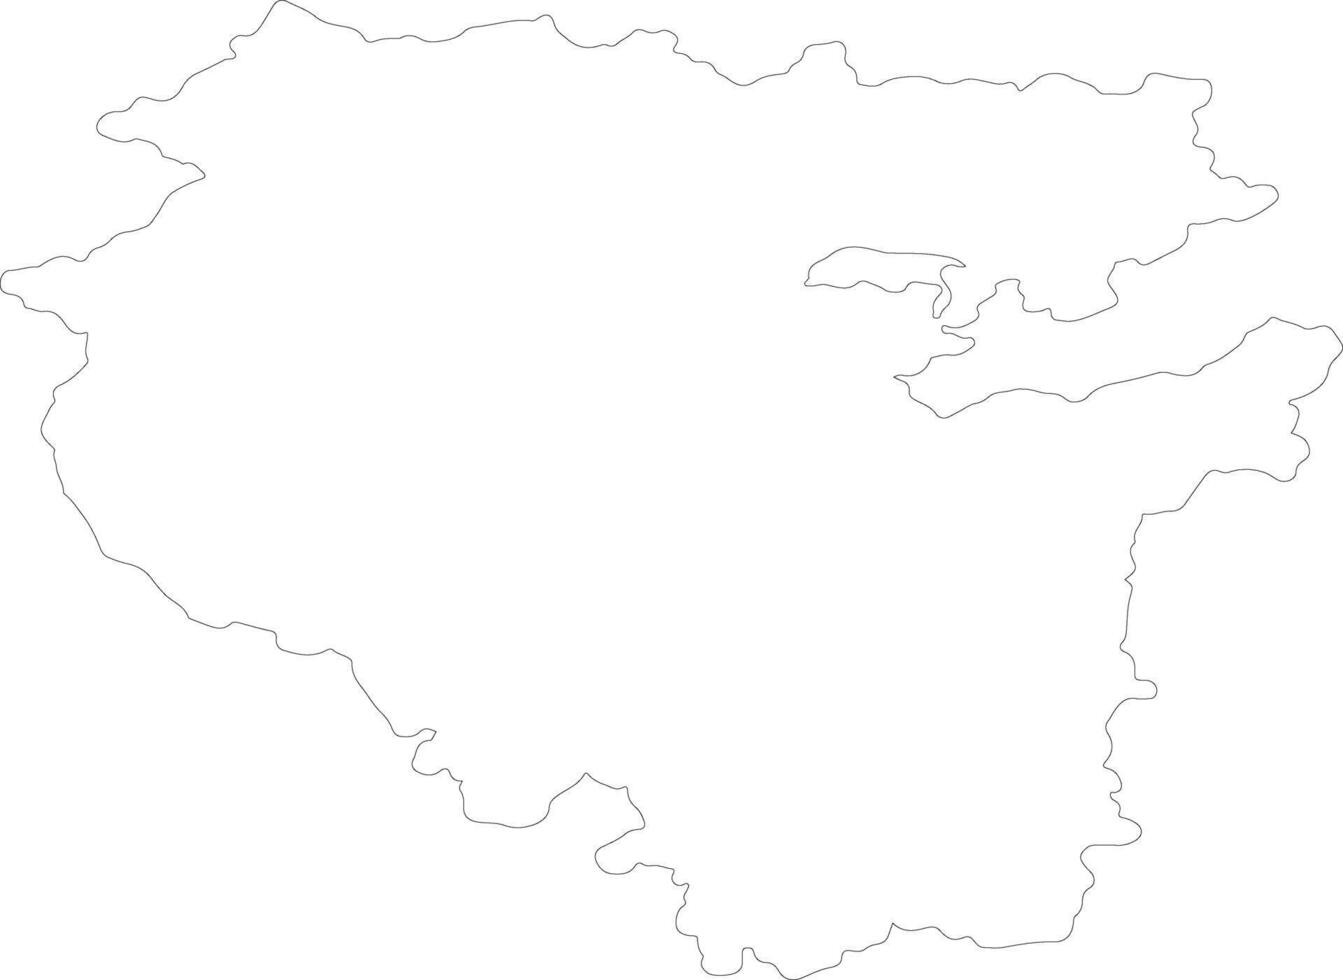 Baschkortostan Russland Gliederung Karte vektor